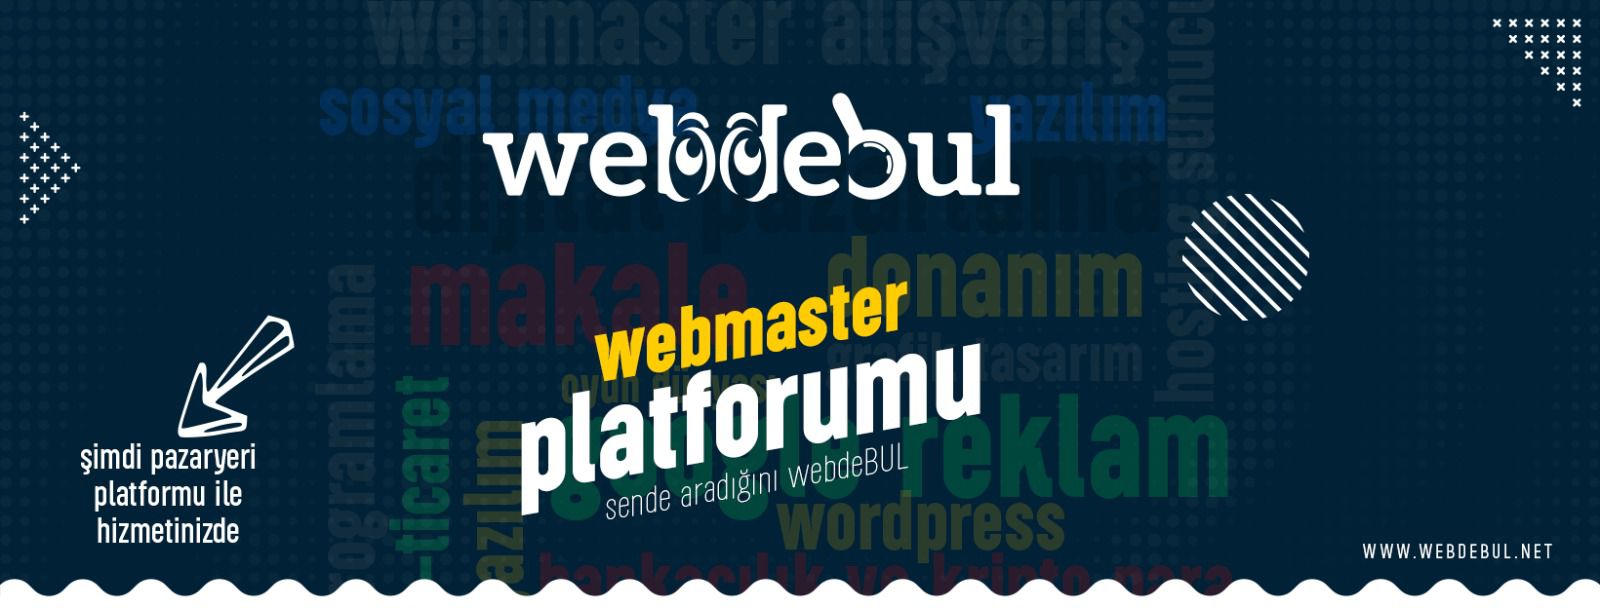 Webdebul.net